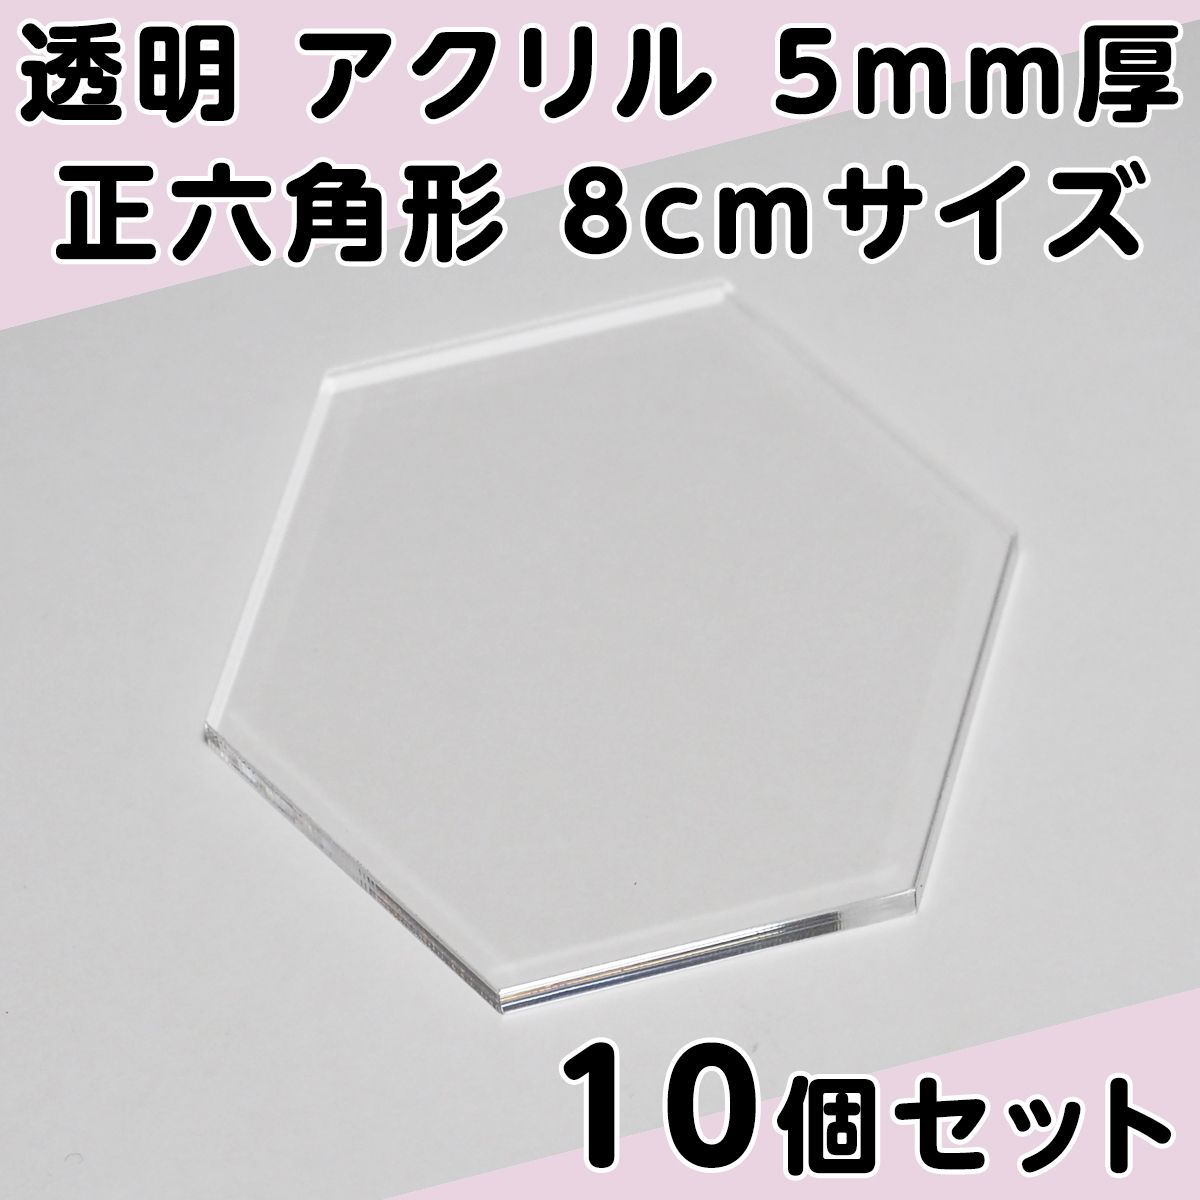 透明 アクリル 5mm厚 正六角形 8cmサイズ 10個セット - メルカリ